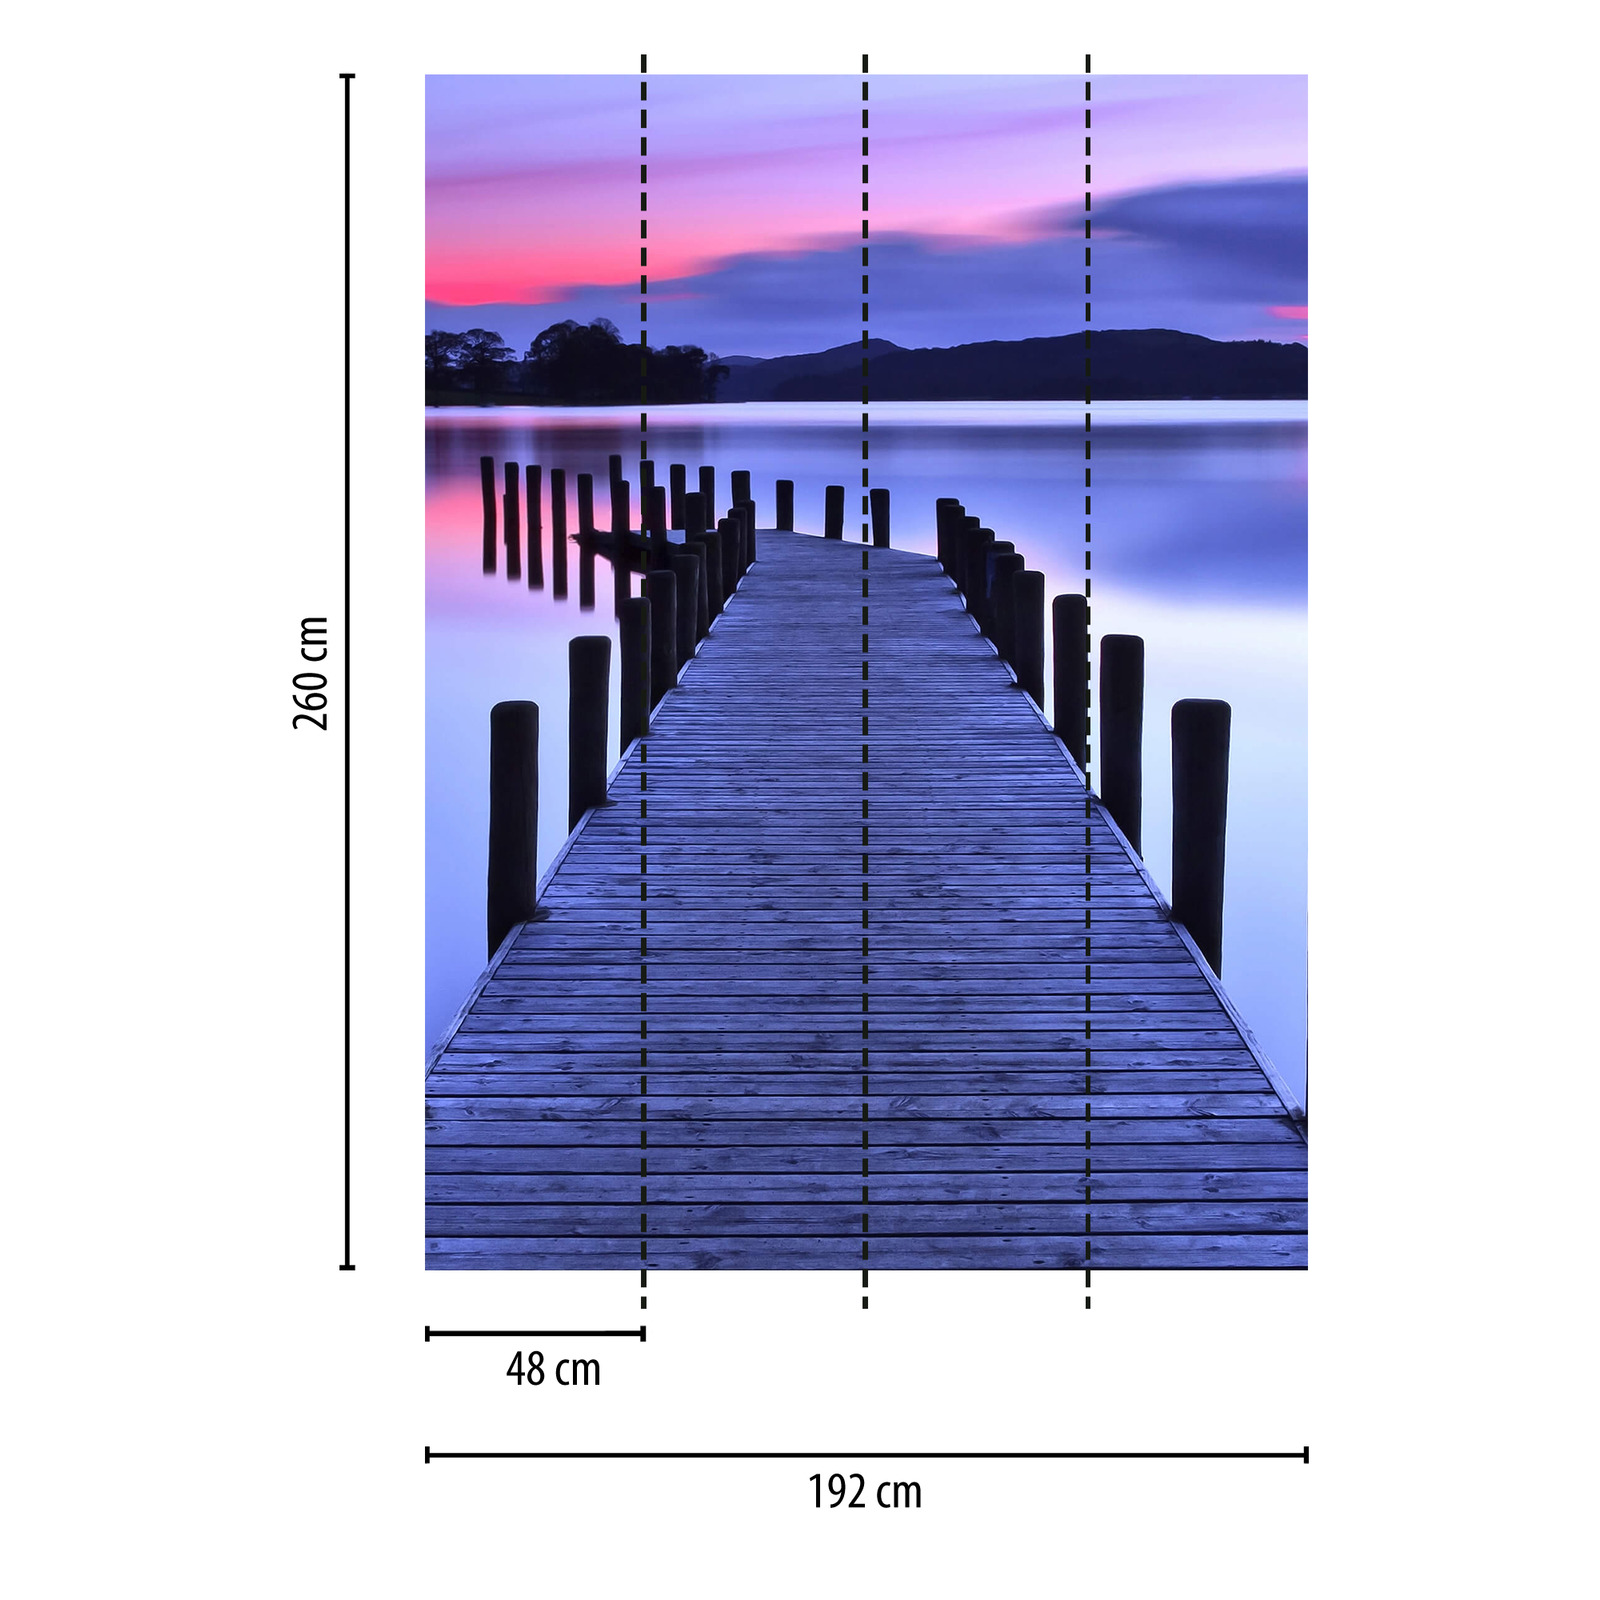             papier peint étroit avec pont au bord du lac - violet, rose
        